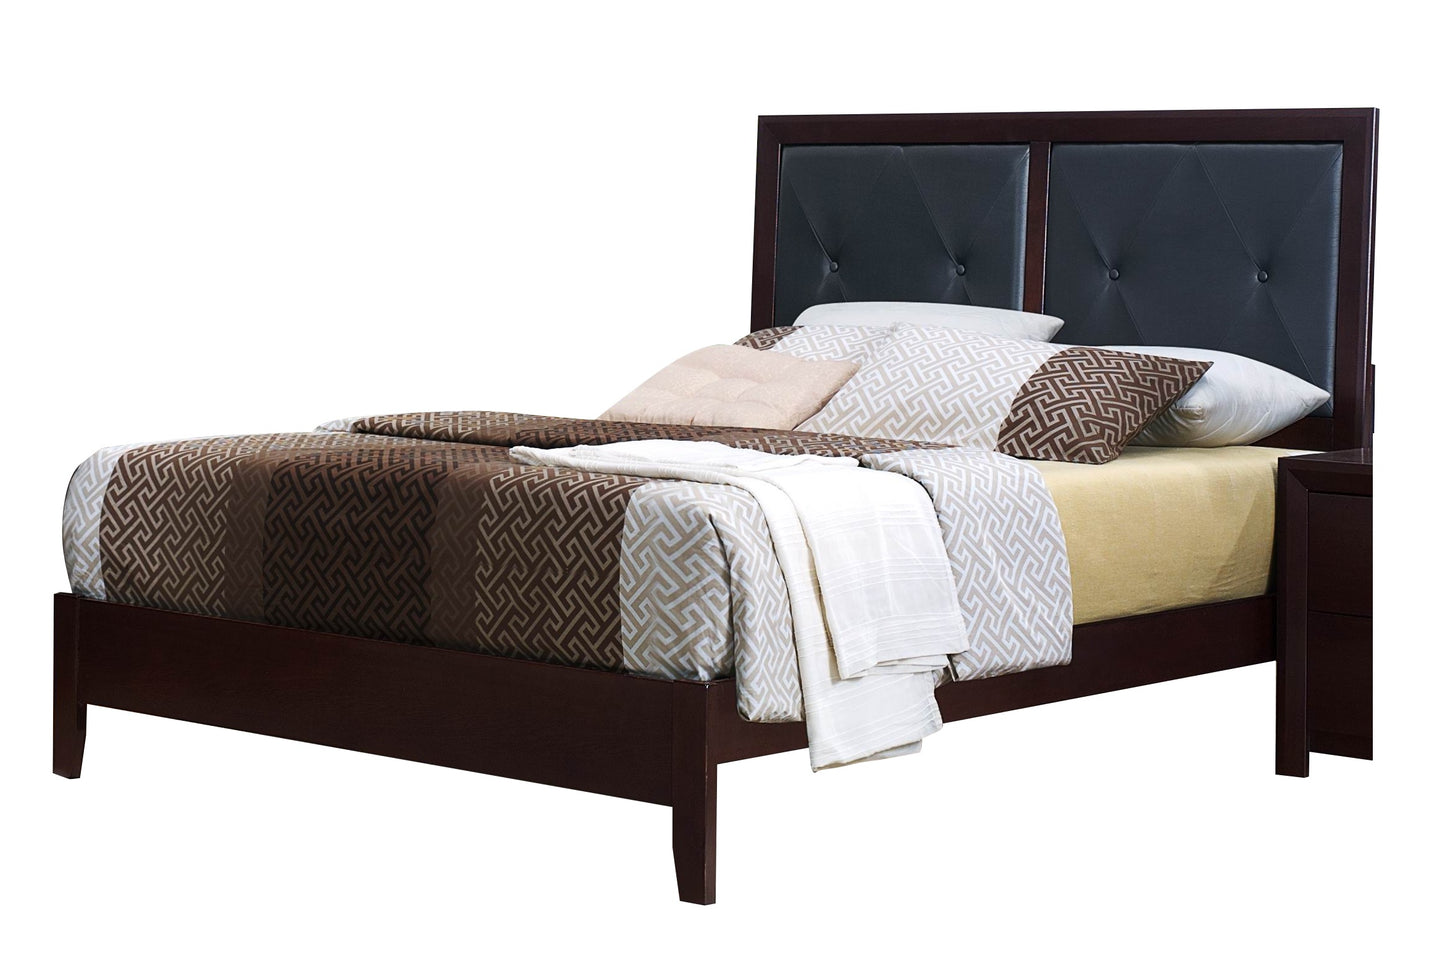 Eagen Casual 4PC Bedroom Set Queen Bed, Nightstand, Dresser, Mirror in Brown Espresso